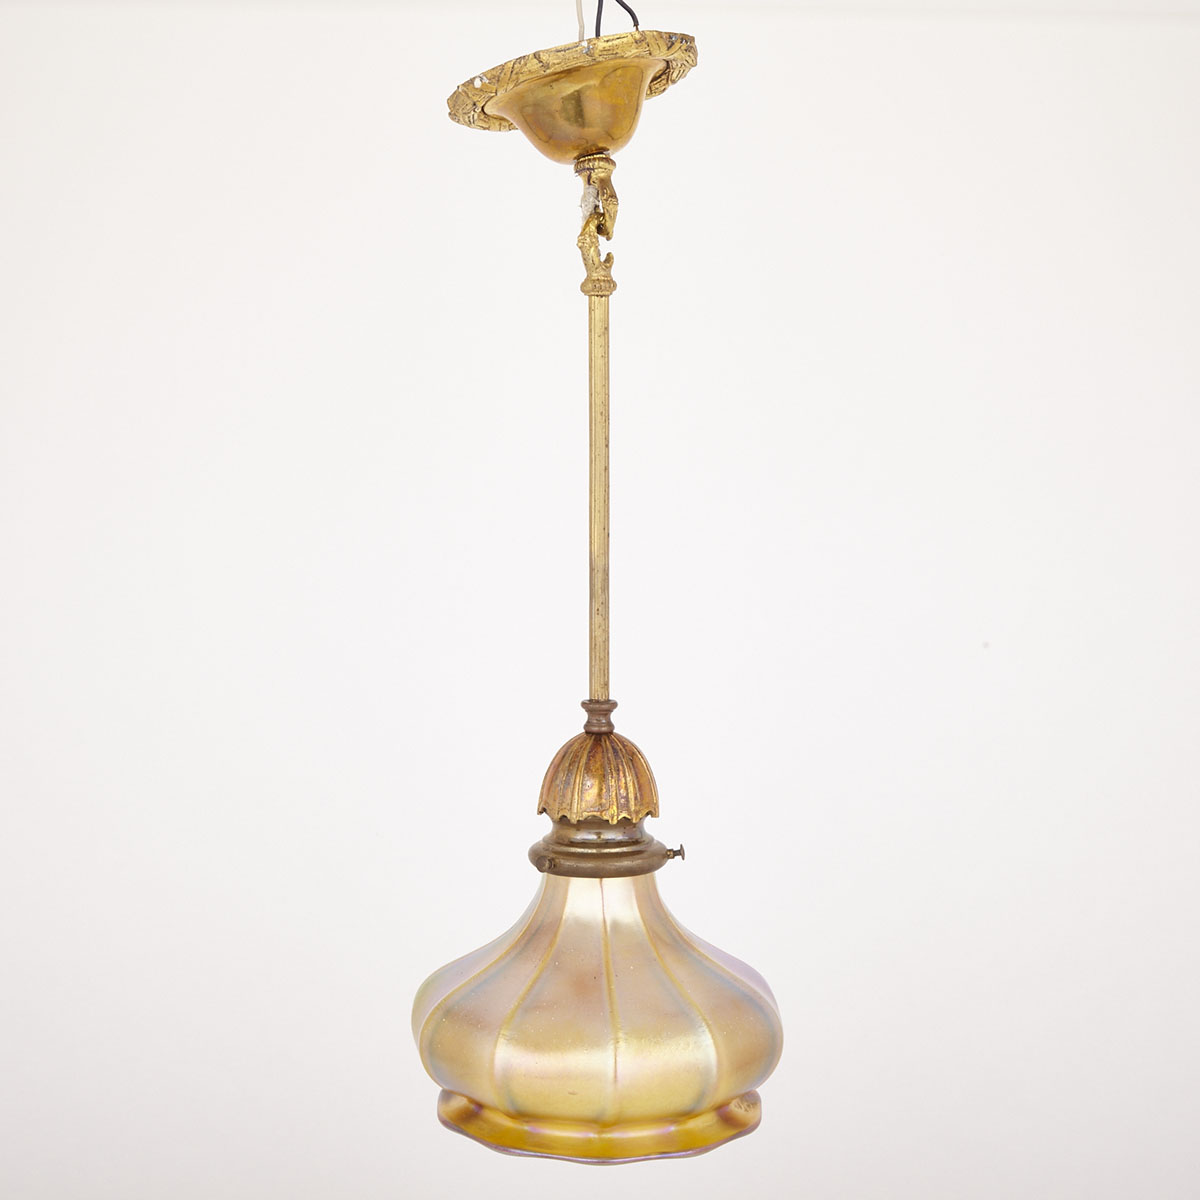 Quezal Aurene Glass and Gilt Brass Hanging Hall Fixture, c.1900